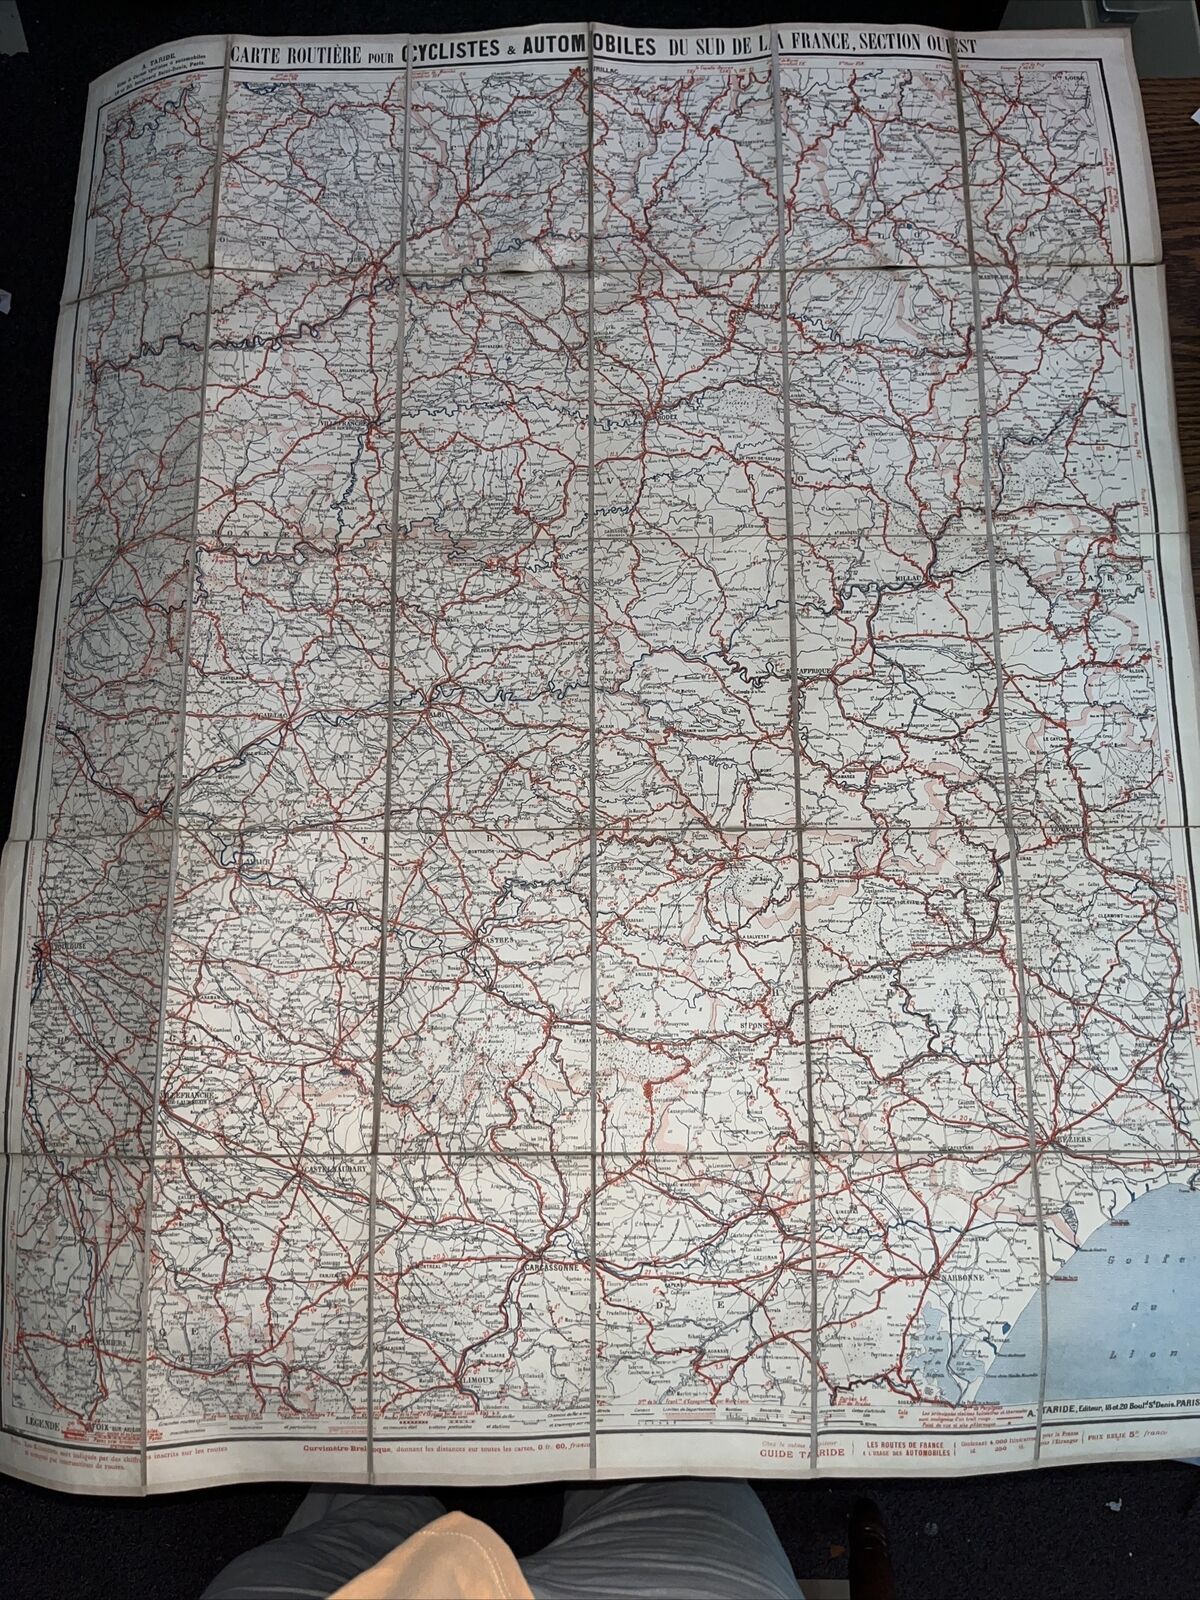 Antique Carte Taride Routière de France West Ouest Map for Cyclists Automobiles